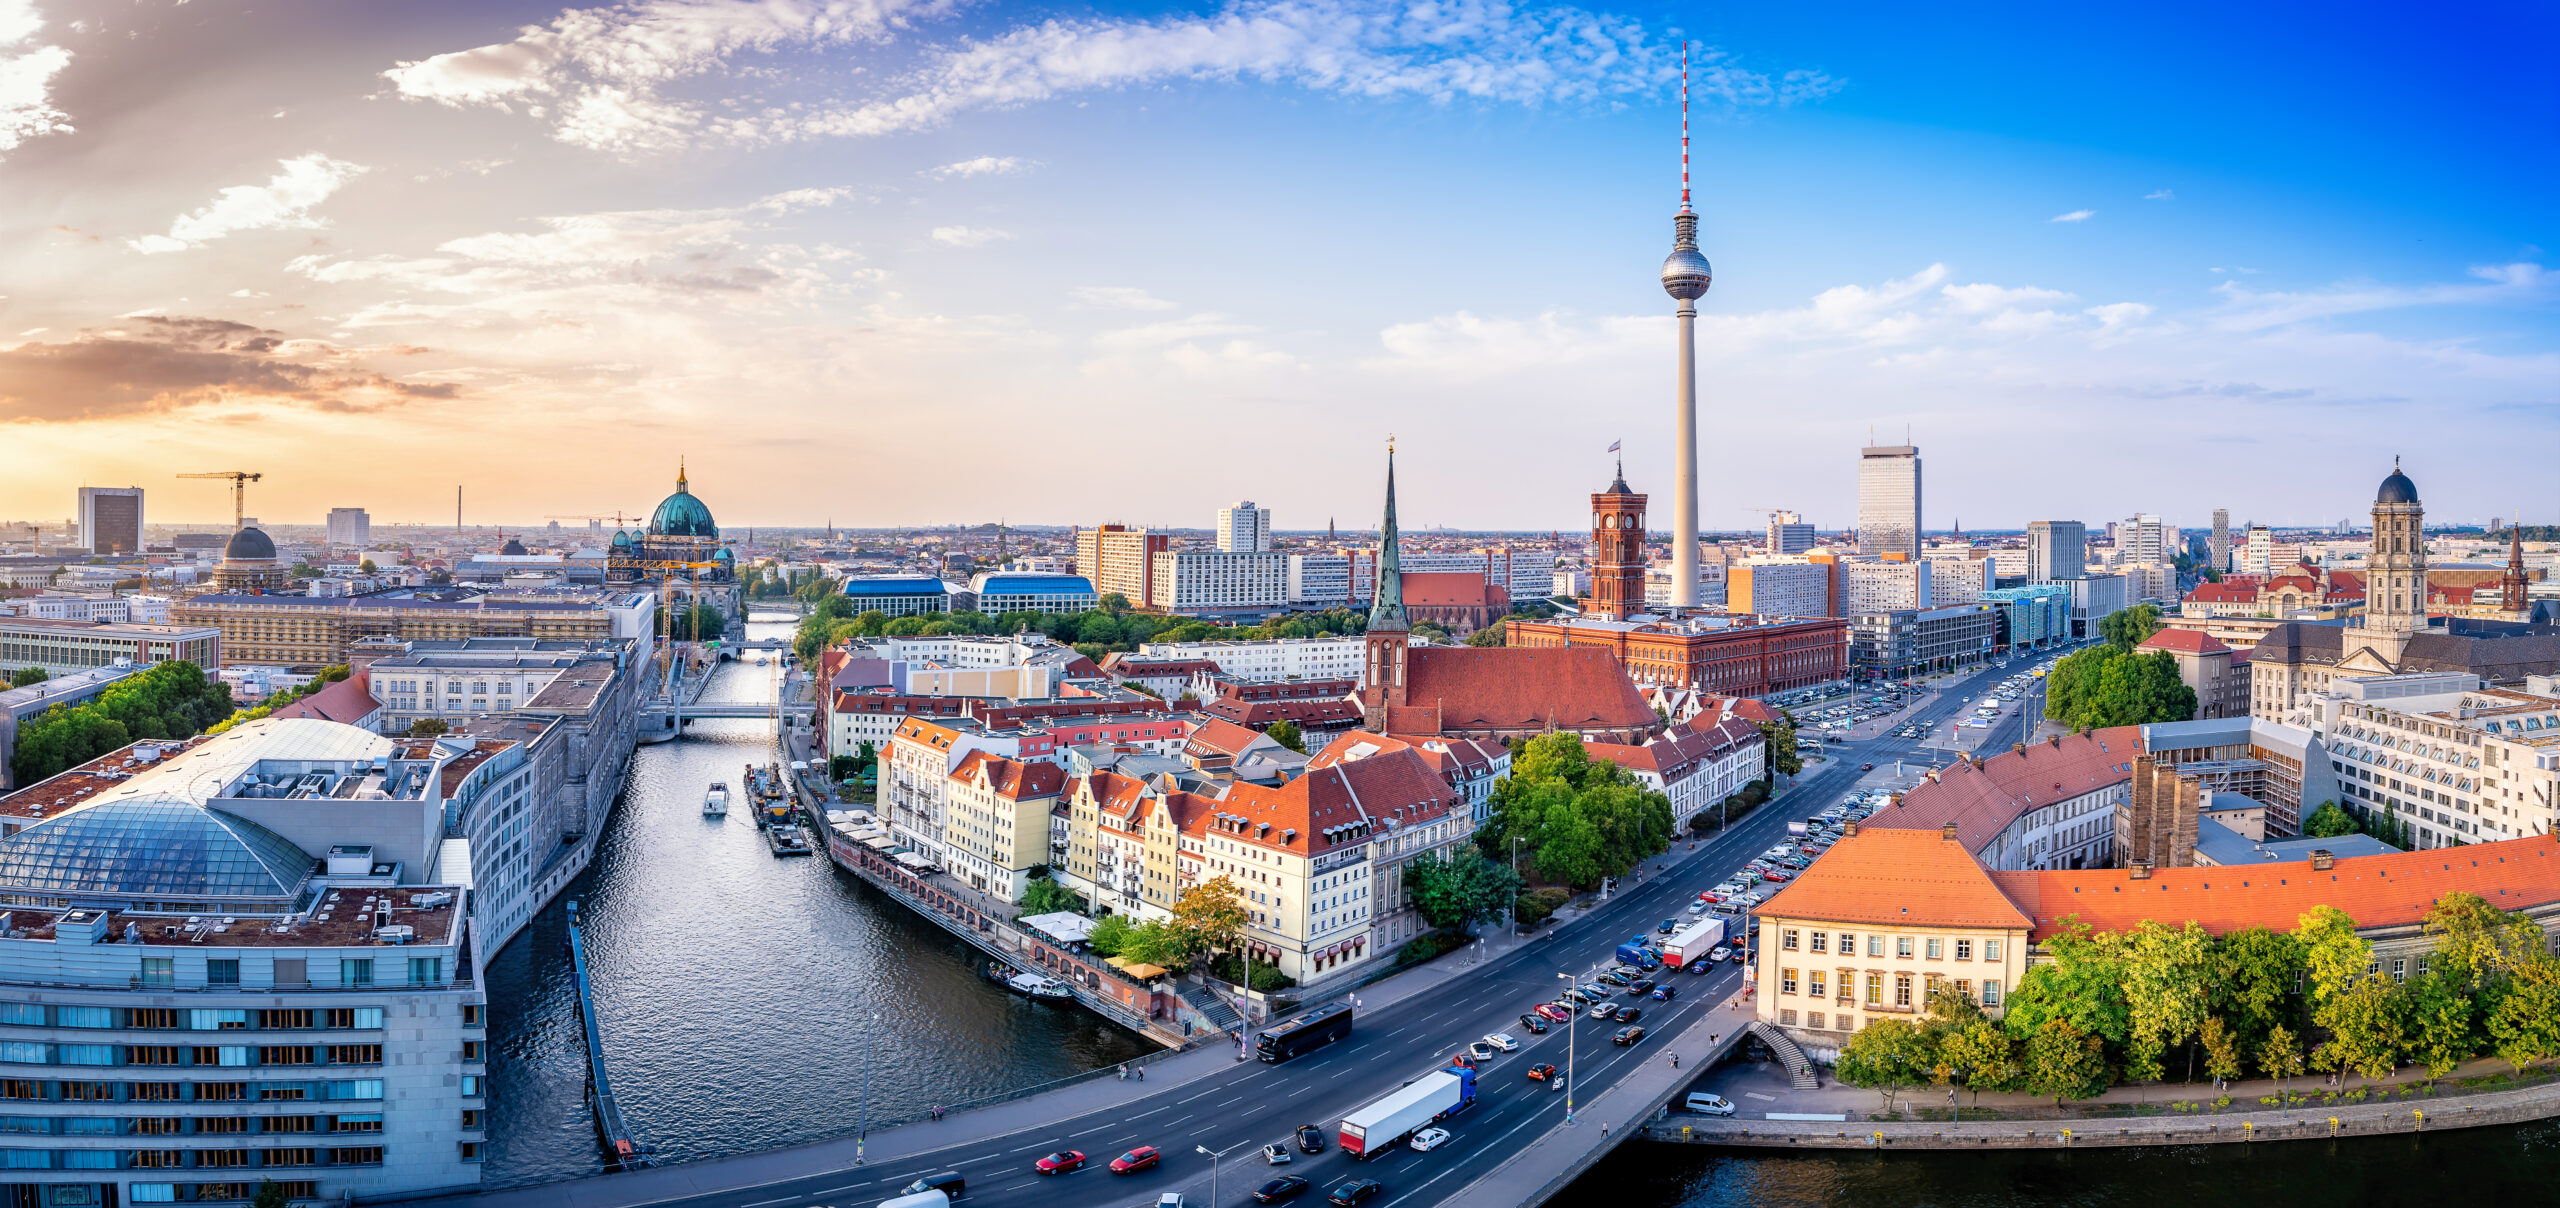 10 Secret Tourist Attractions In Berlin